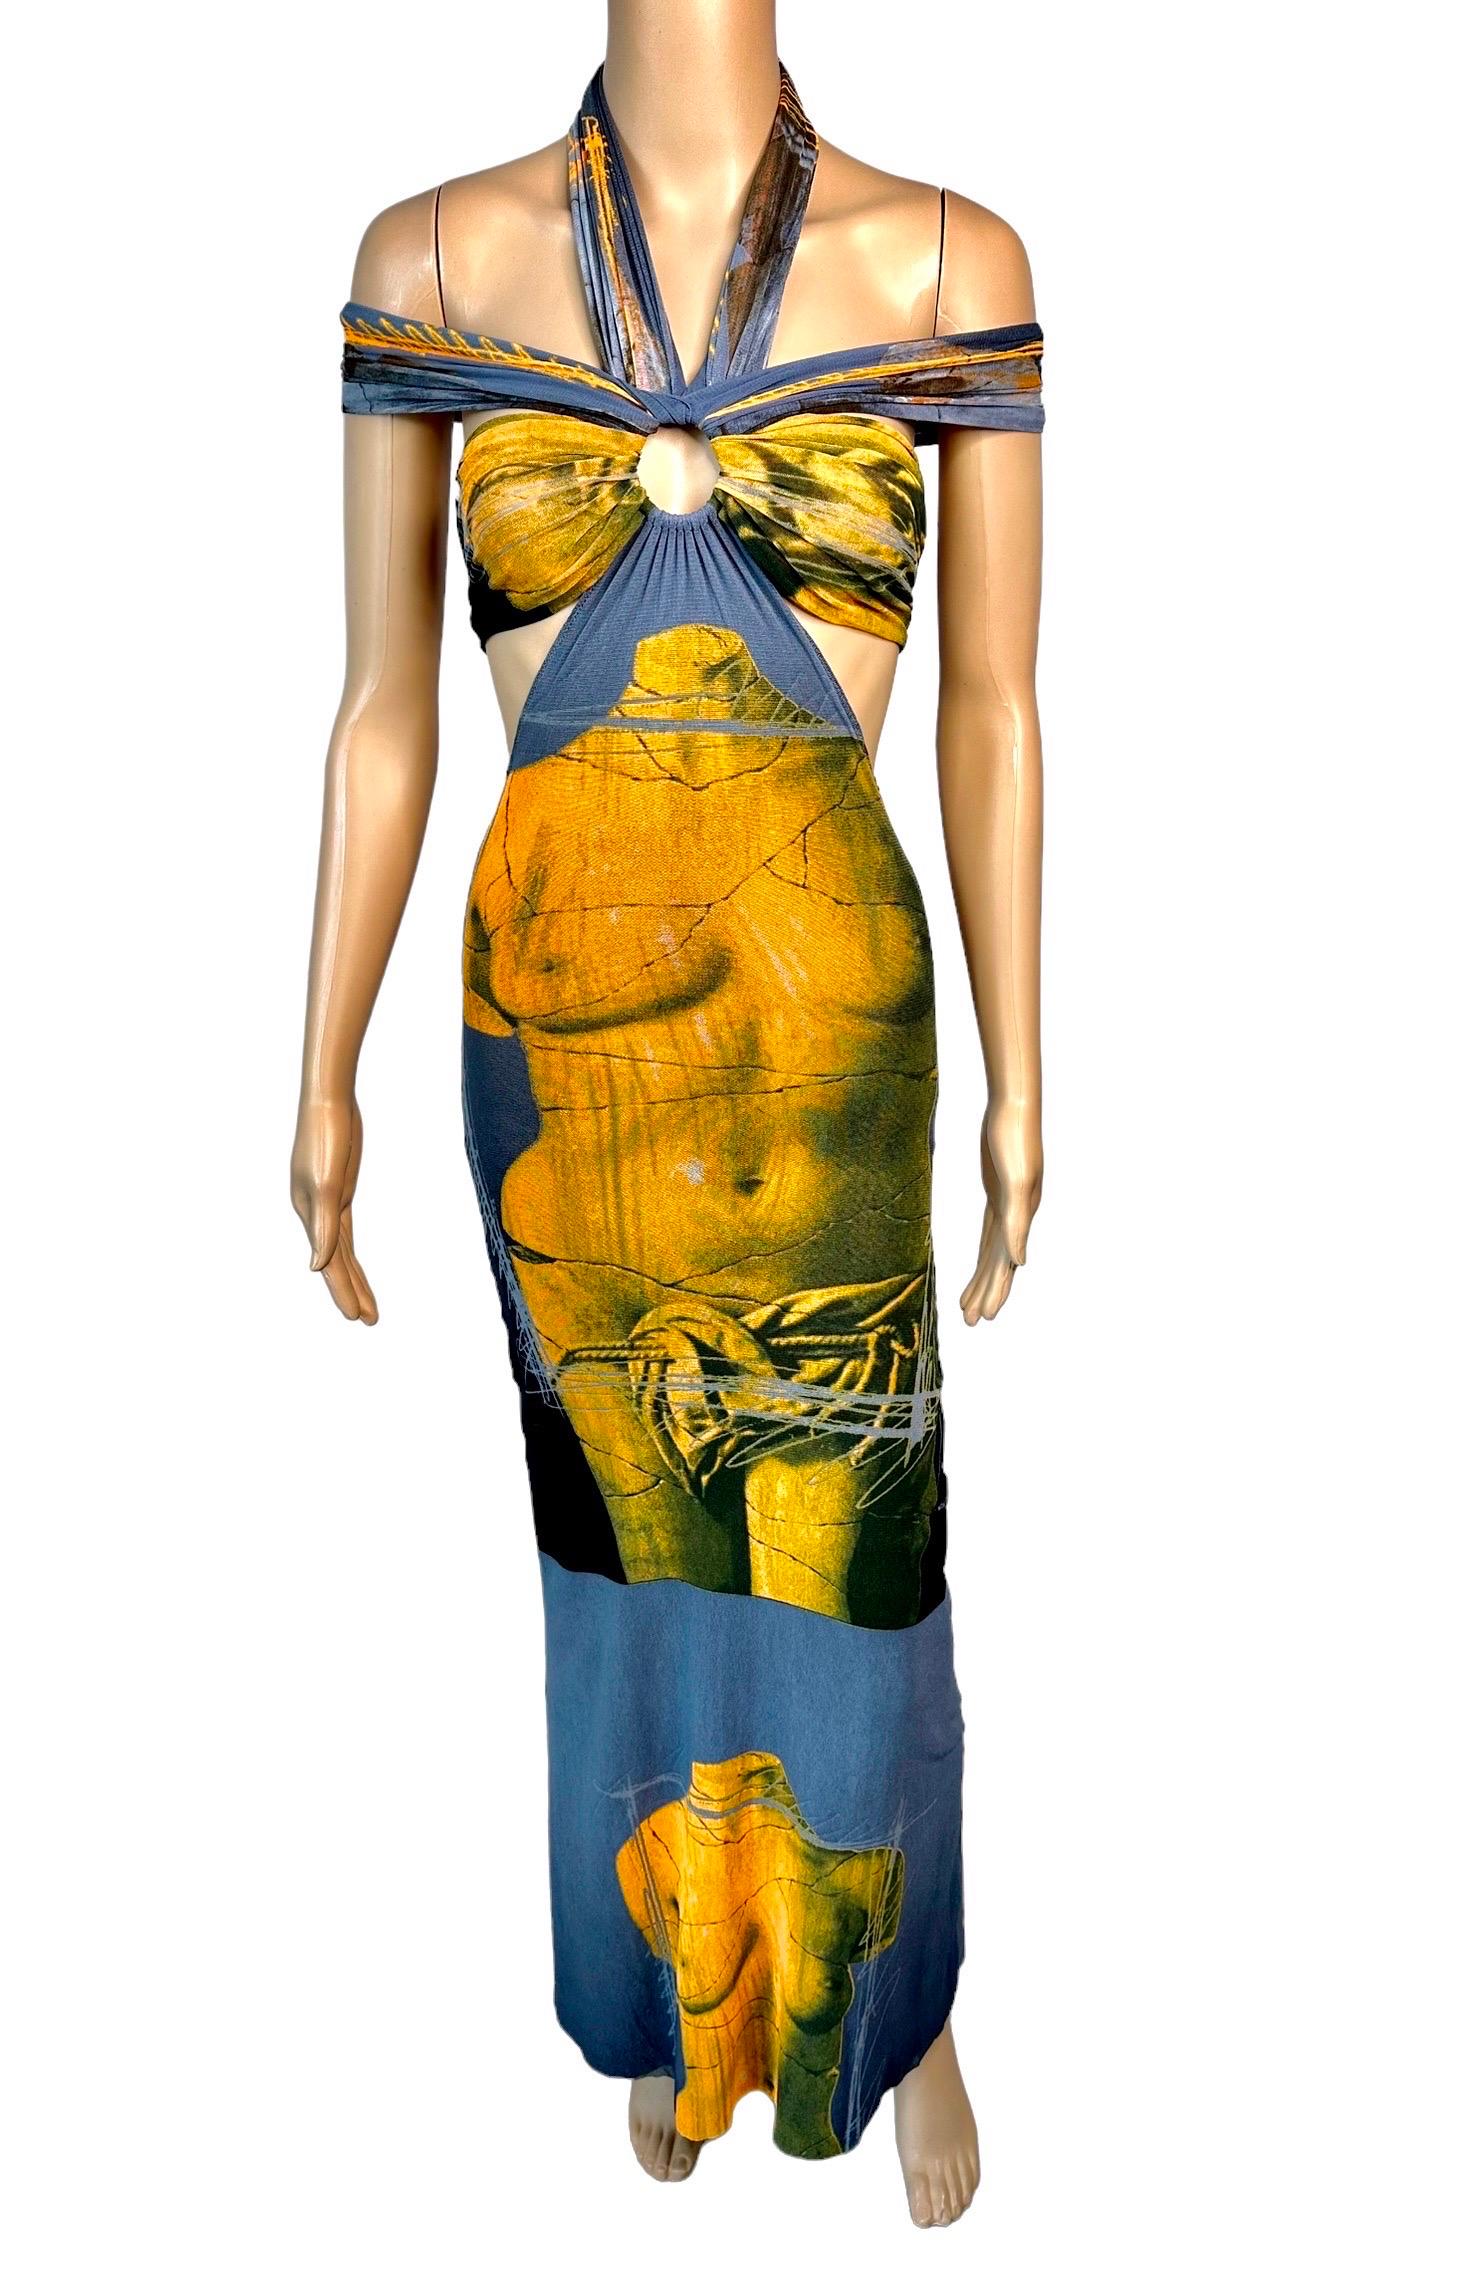 Jean Paul Gaultier Soleil S/S 1999 Vintage Venus De Milo Cutout Mesh Sheer Dress 7